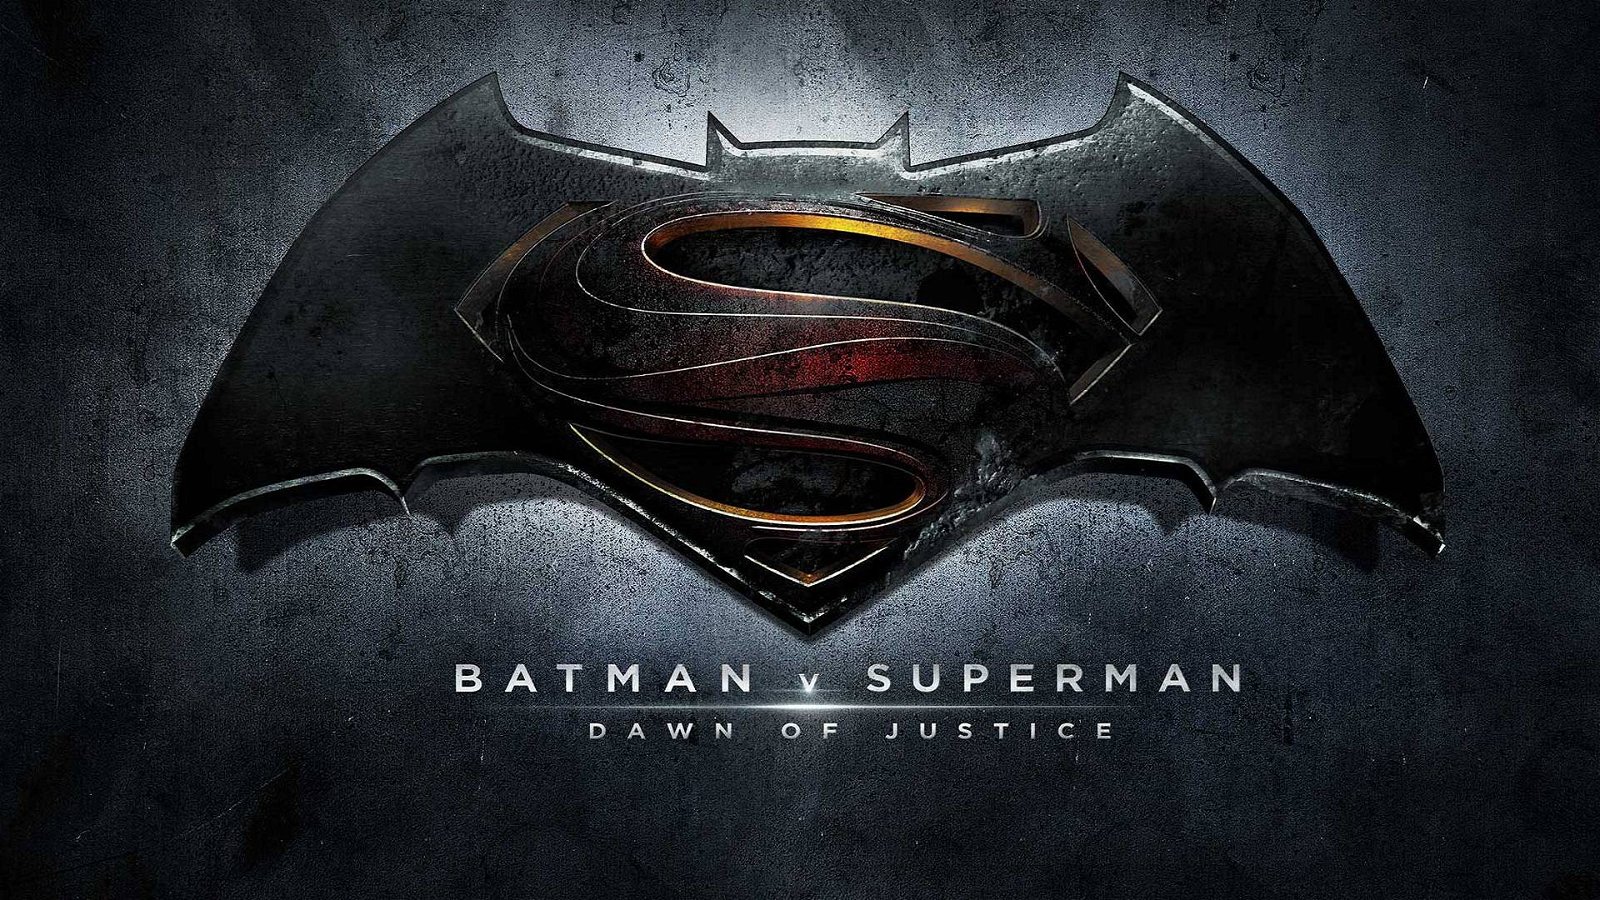 Immagine di Batman v Superman: Zack Snyder commenterà il film live oggi pomeriggio